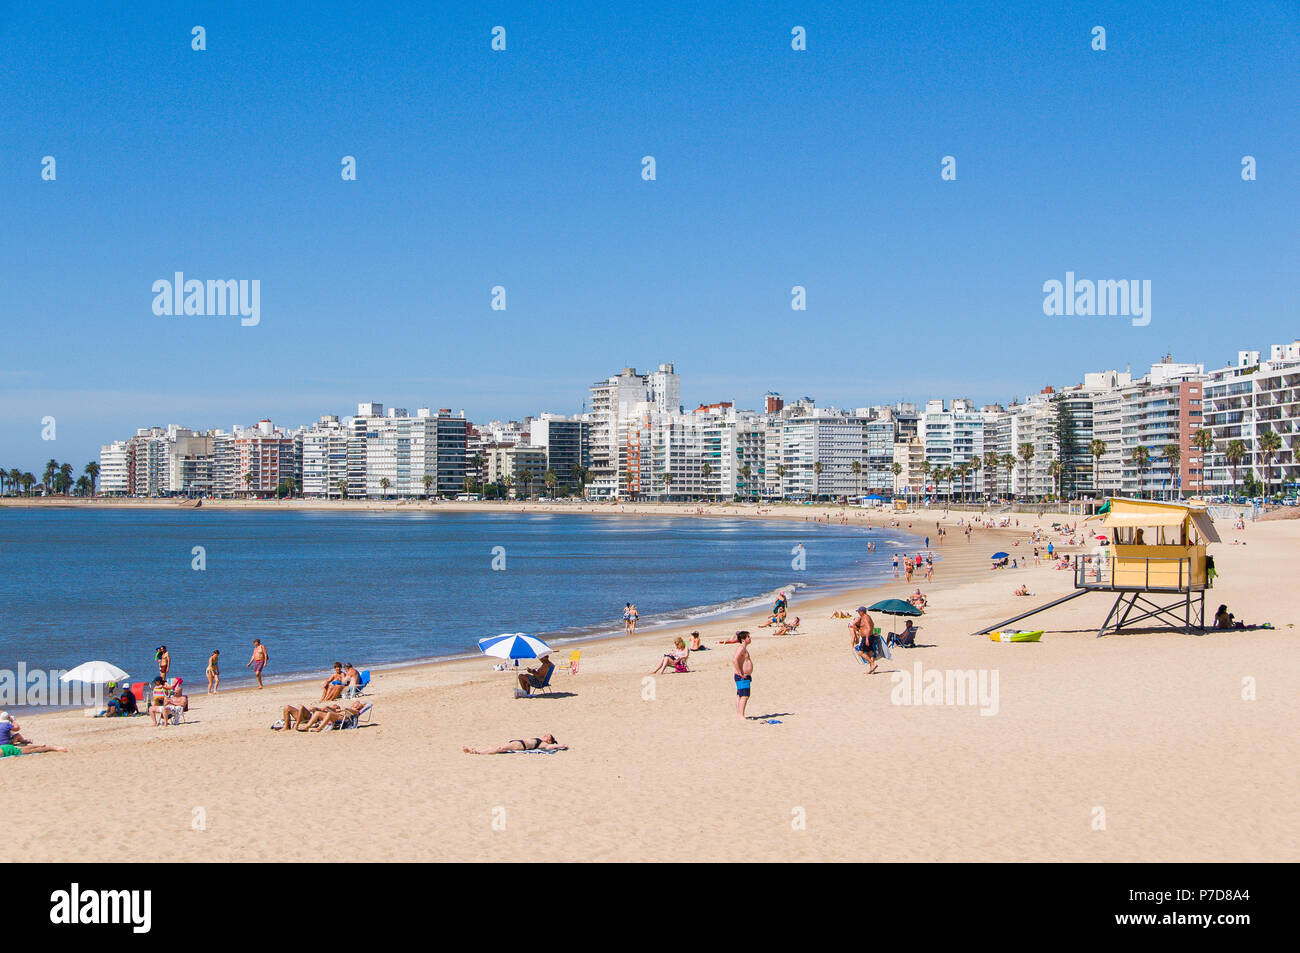 Nuotatori presso la spiaggia della città e grattacieli di Montevideo, Uruguay Foto Stock